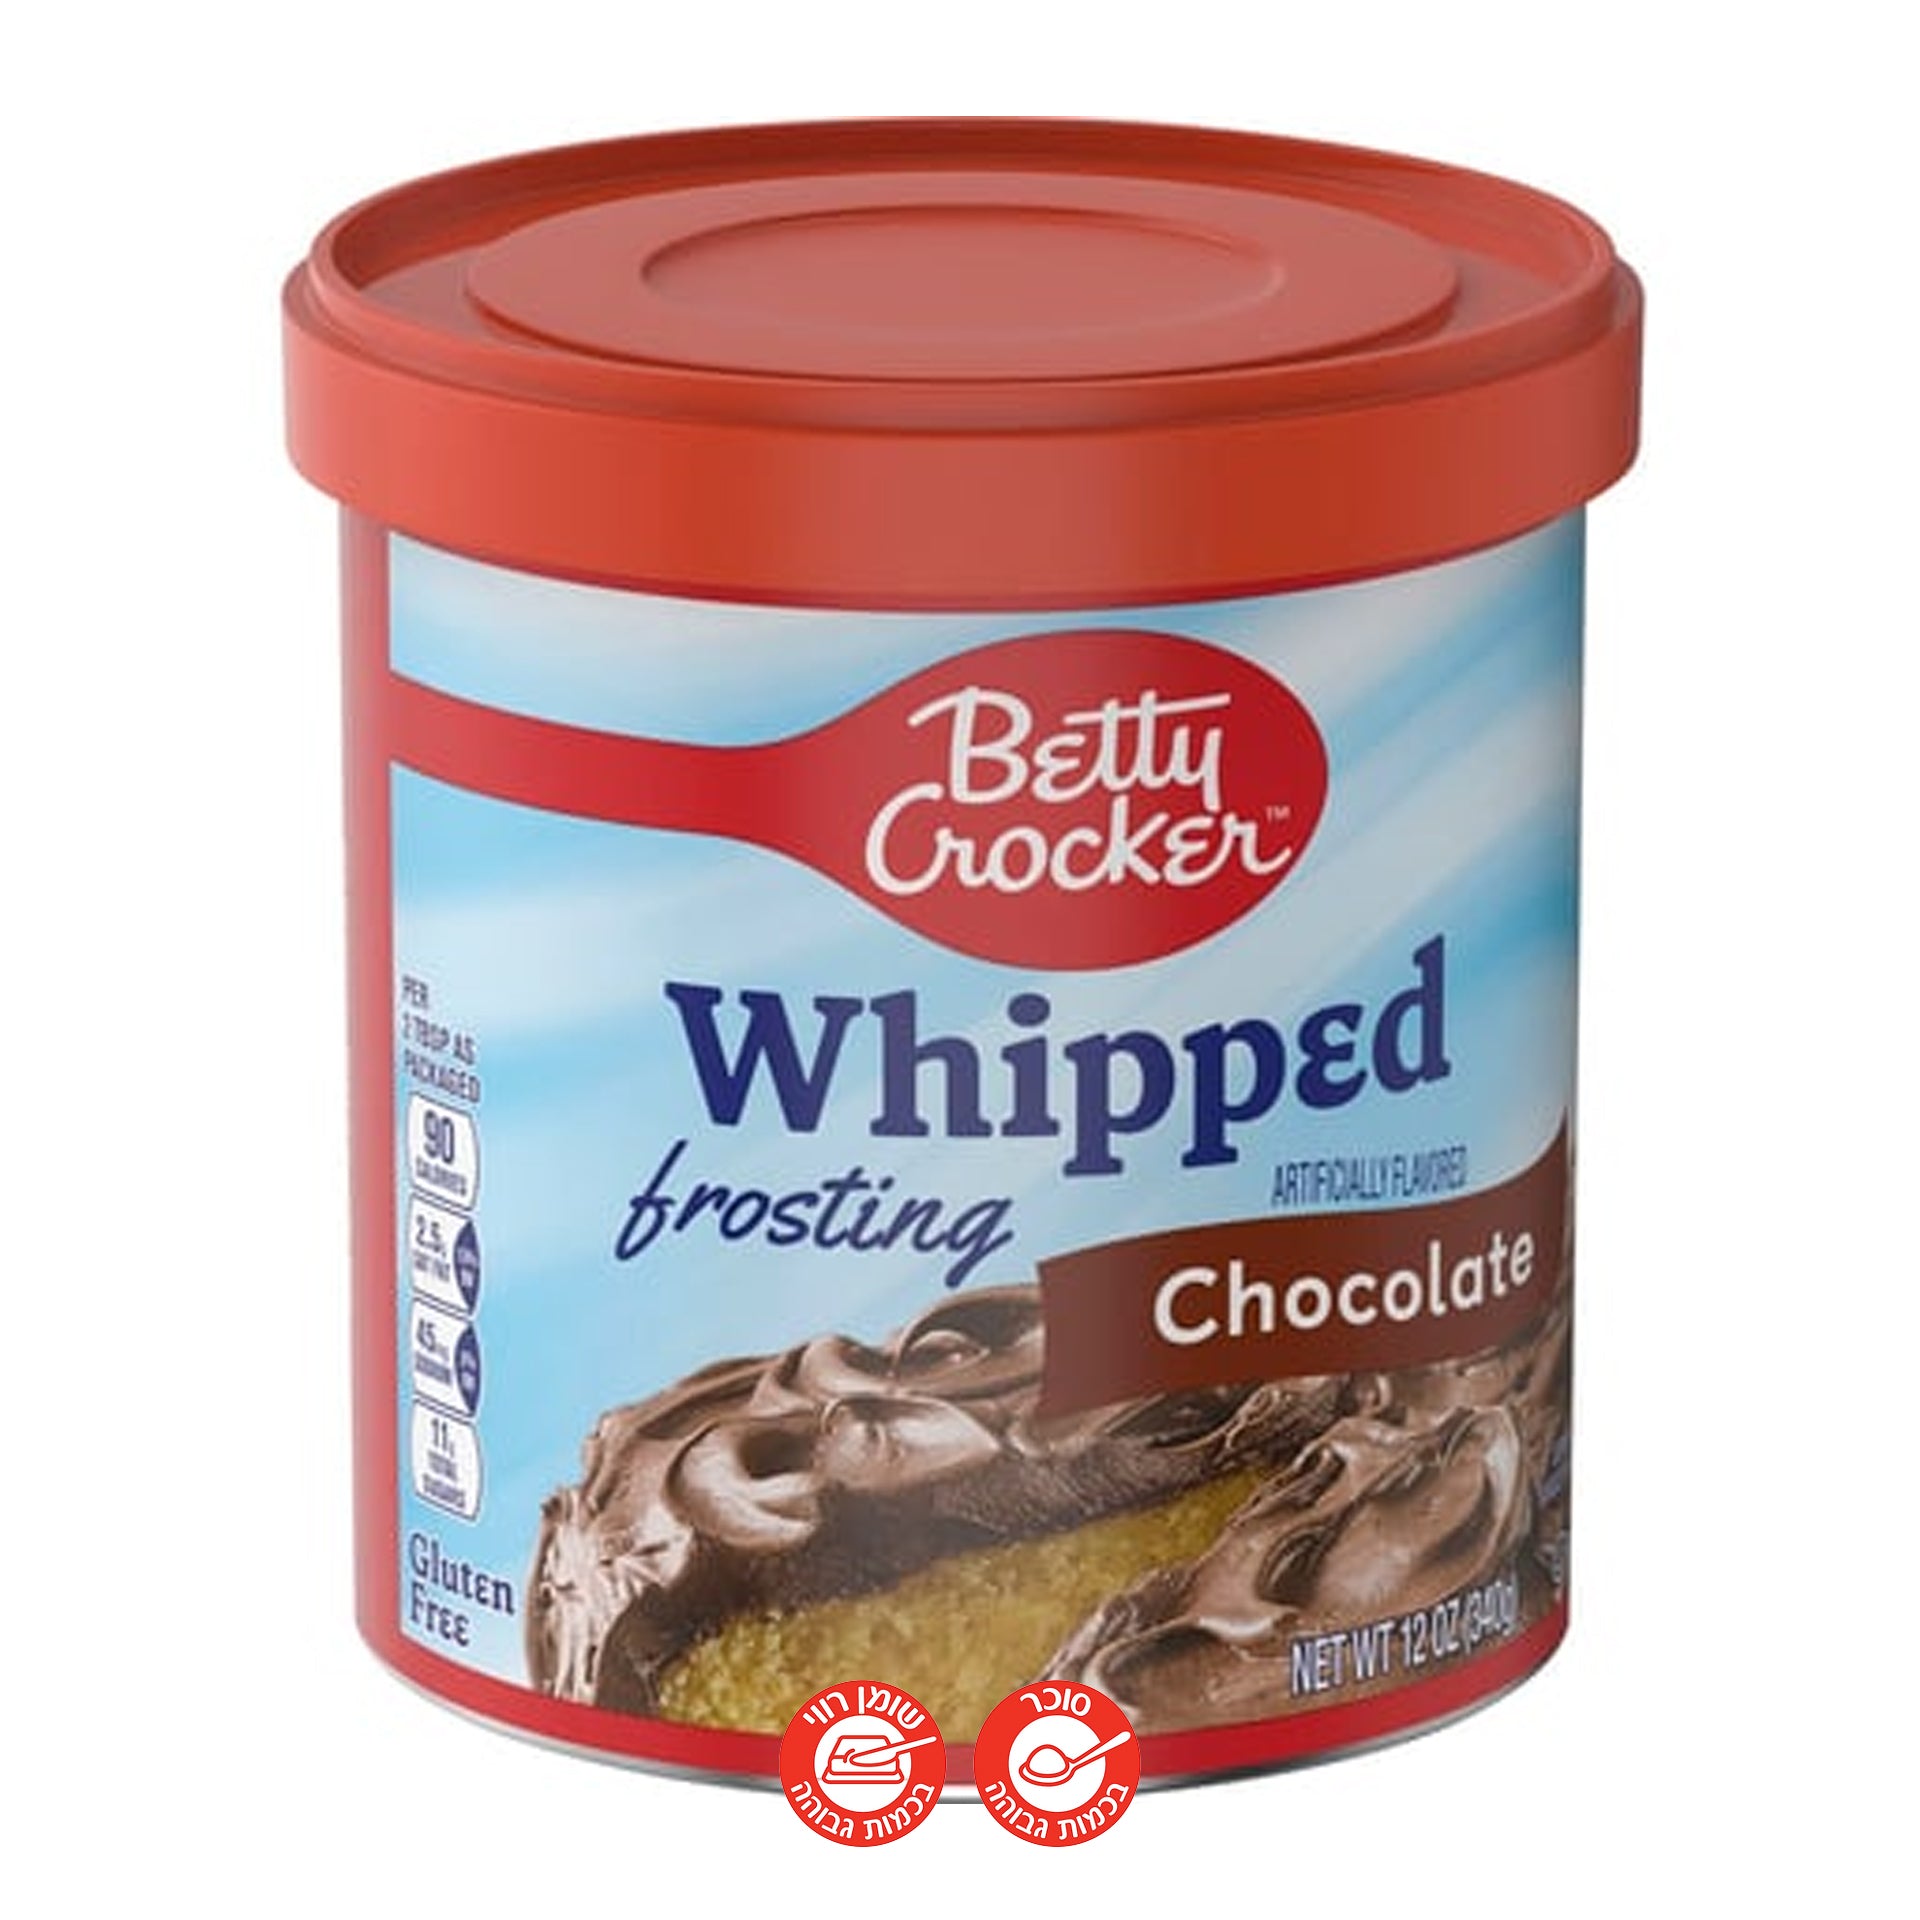 Betty Crocker Whipped Frosting Chocolate בטי קרוקר ציפוי שוקולד לעוגה 